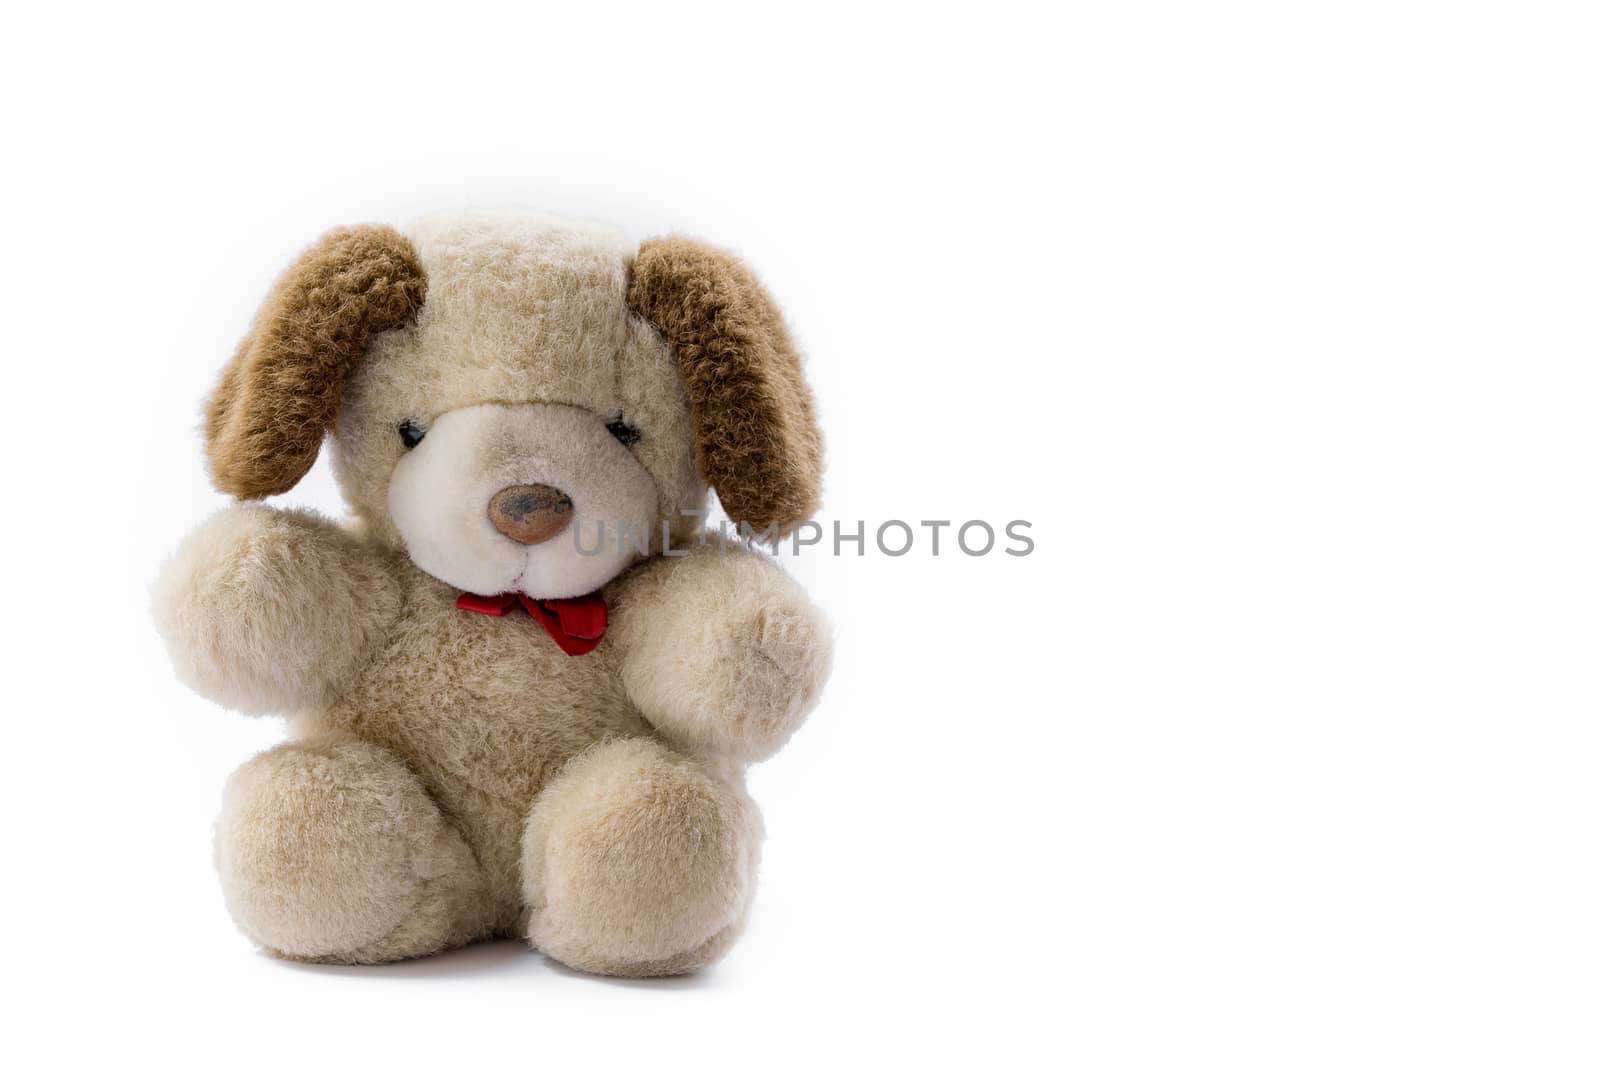 Cute teddy bear. by wattanaphob